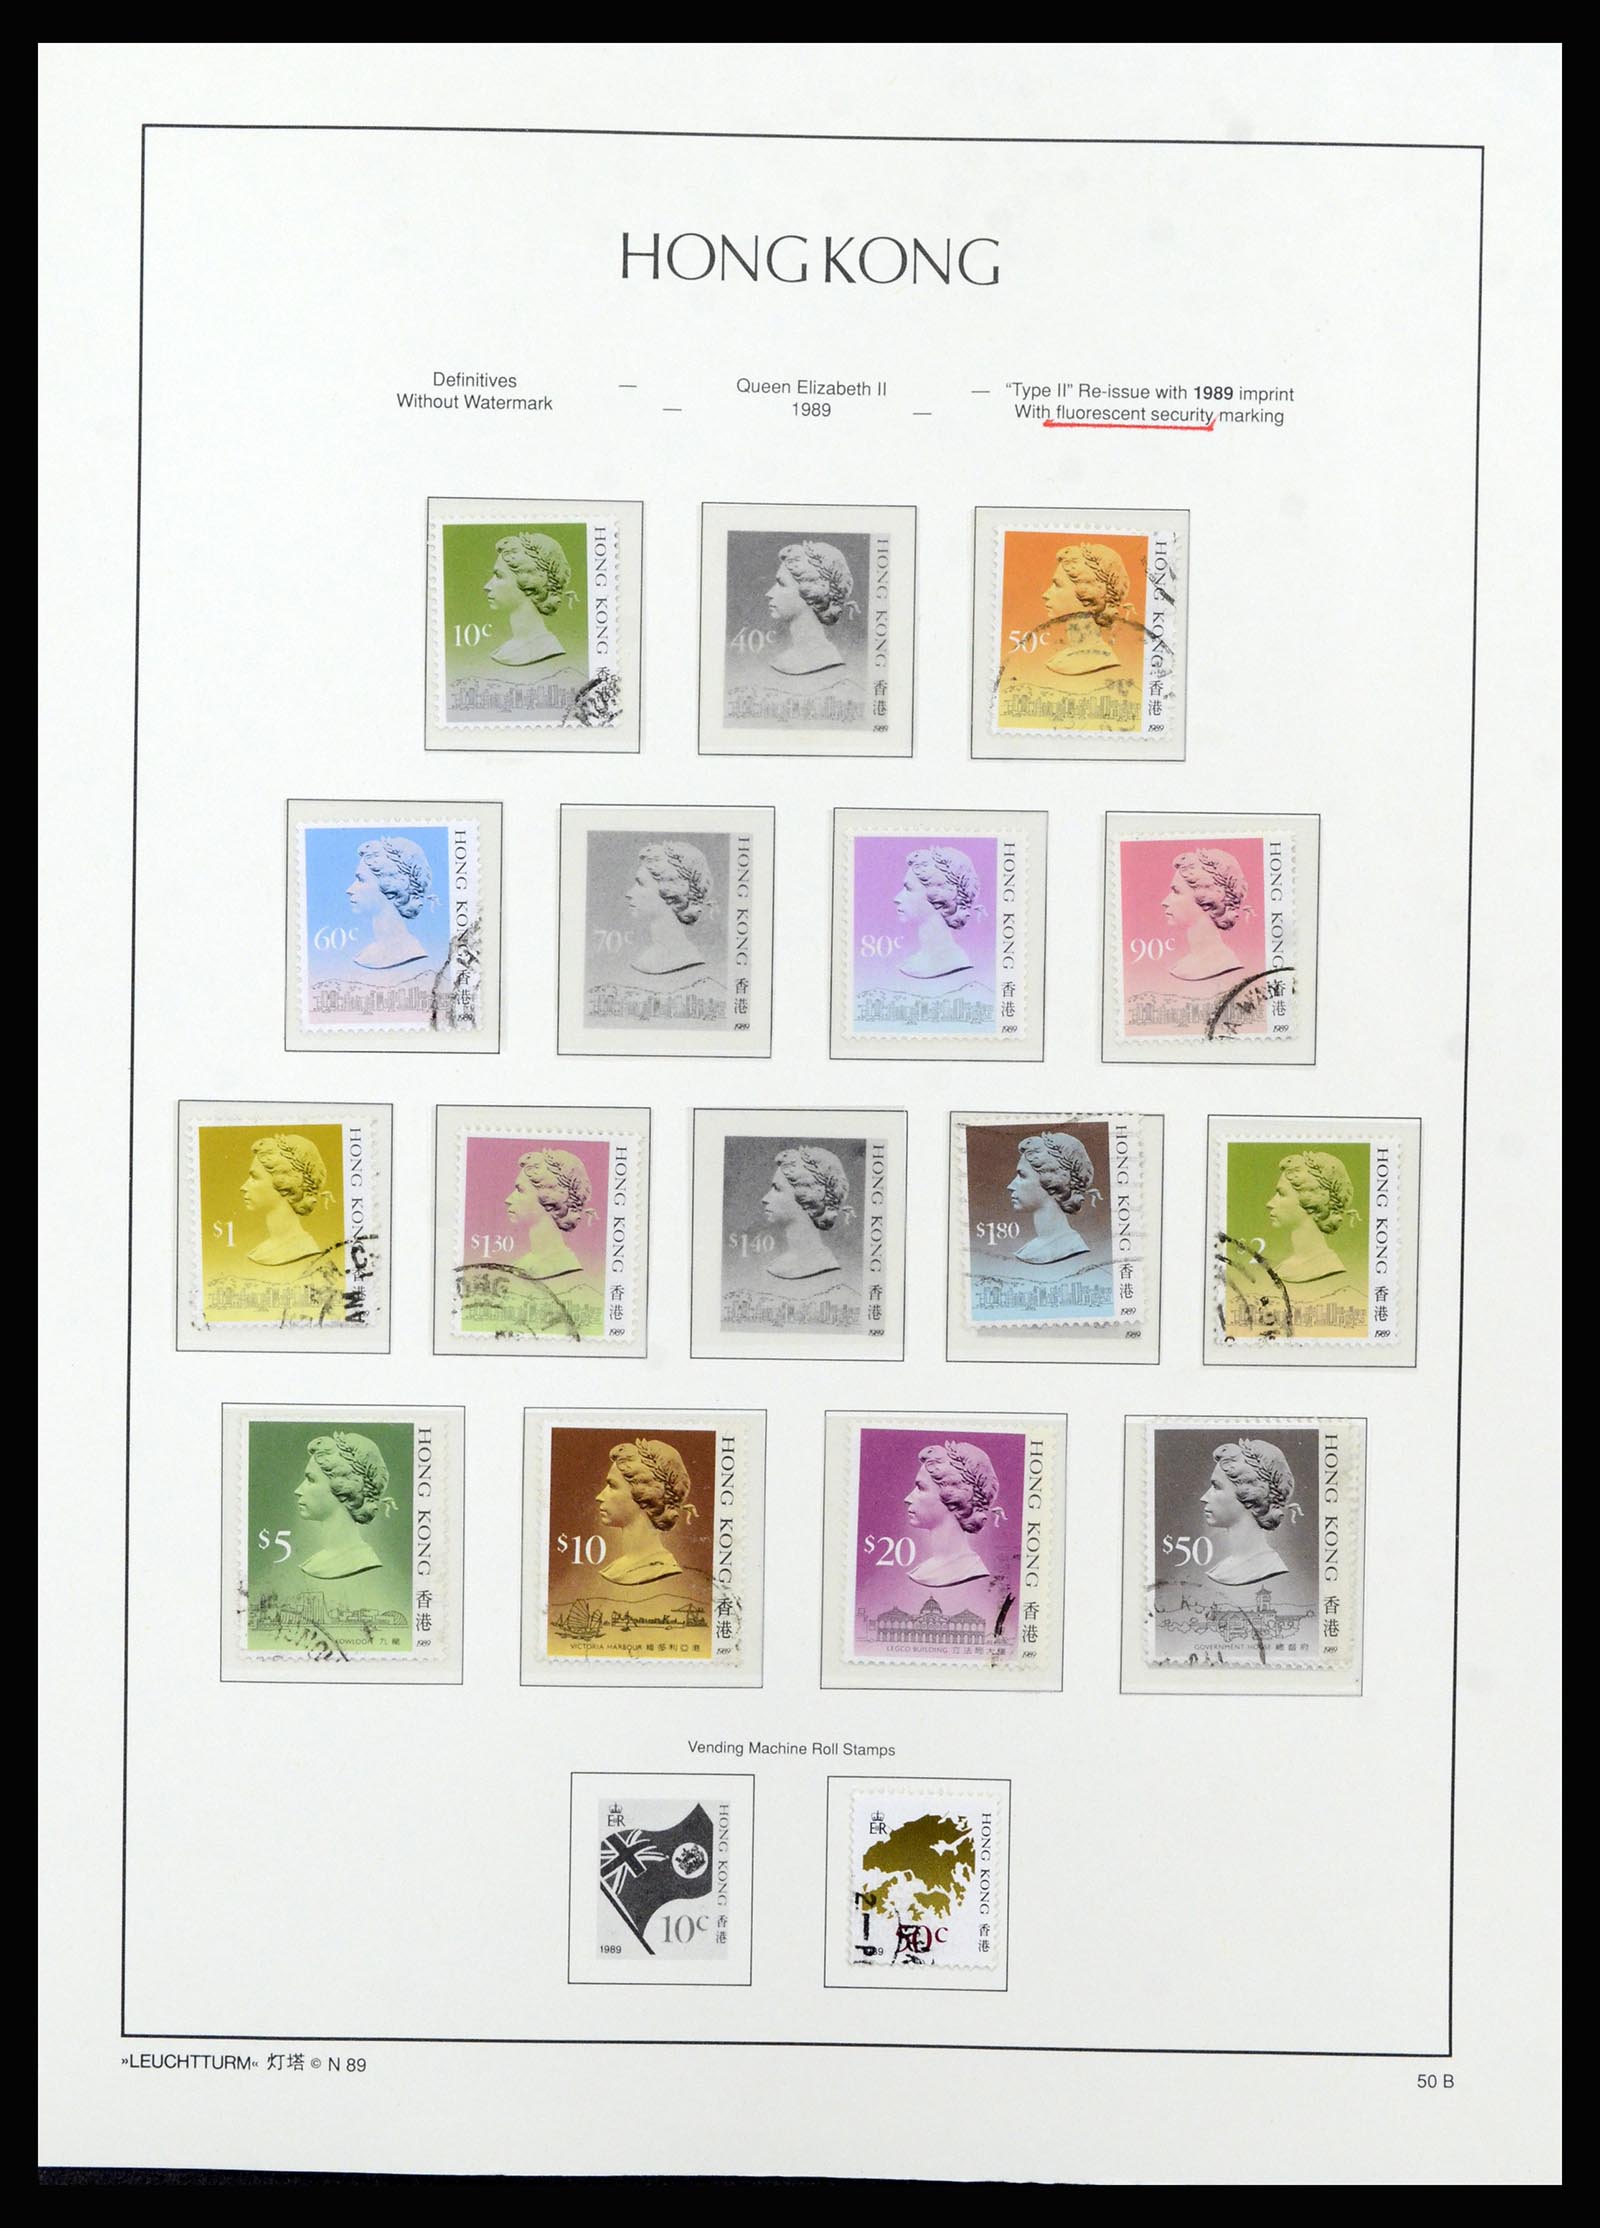 37070 057 - Stamp collection 37070 Hong Kong 1862-1996.